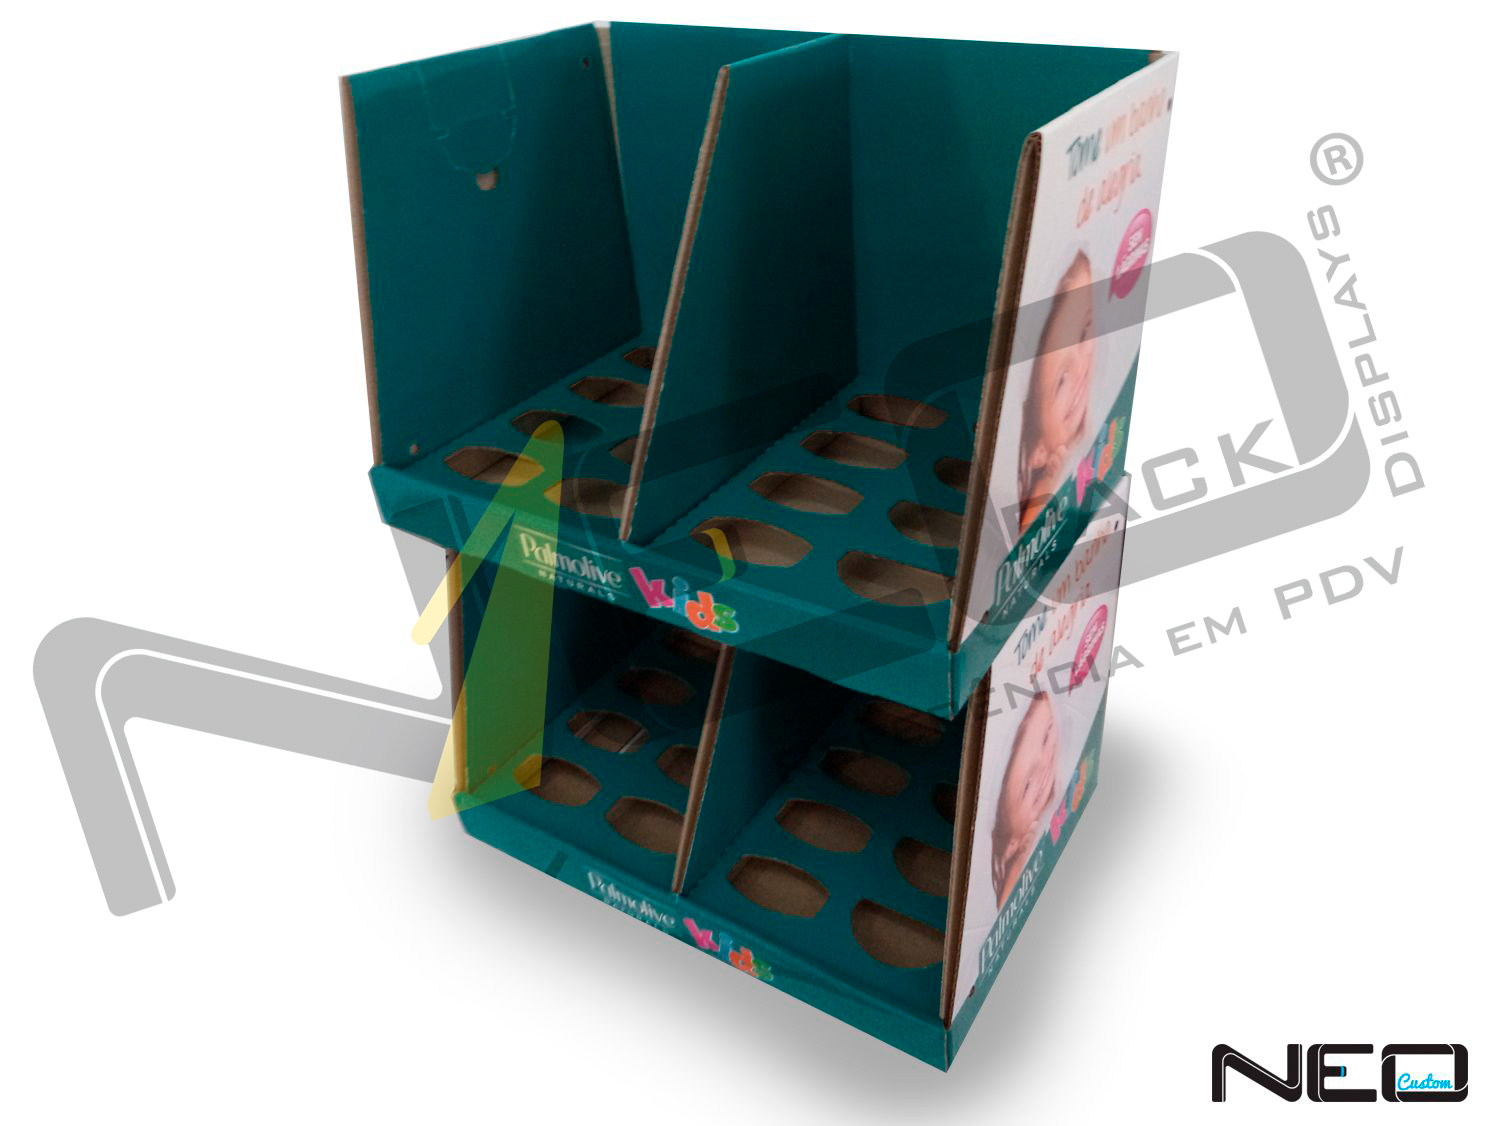 display de papelão expositor site_neopack_produtos_organizadores_goldola_palmolive-1500x1126